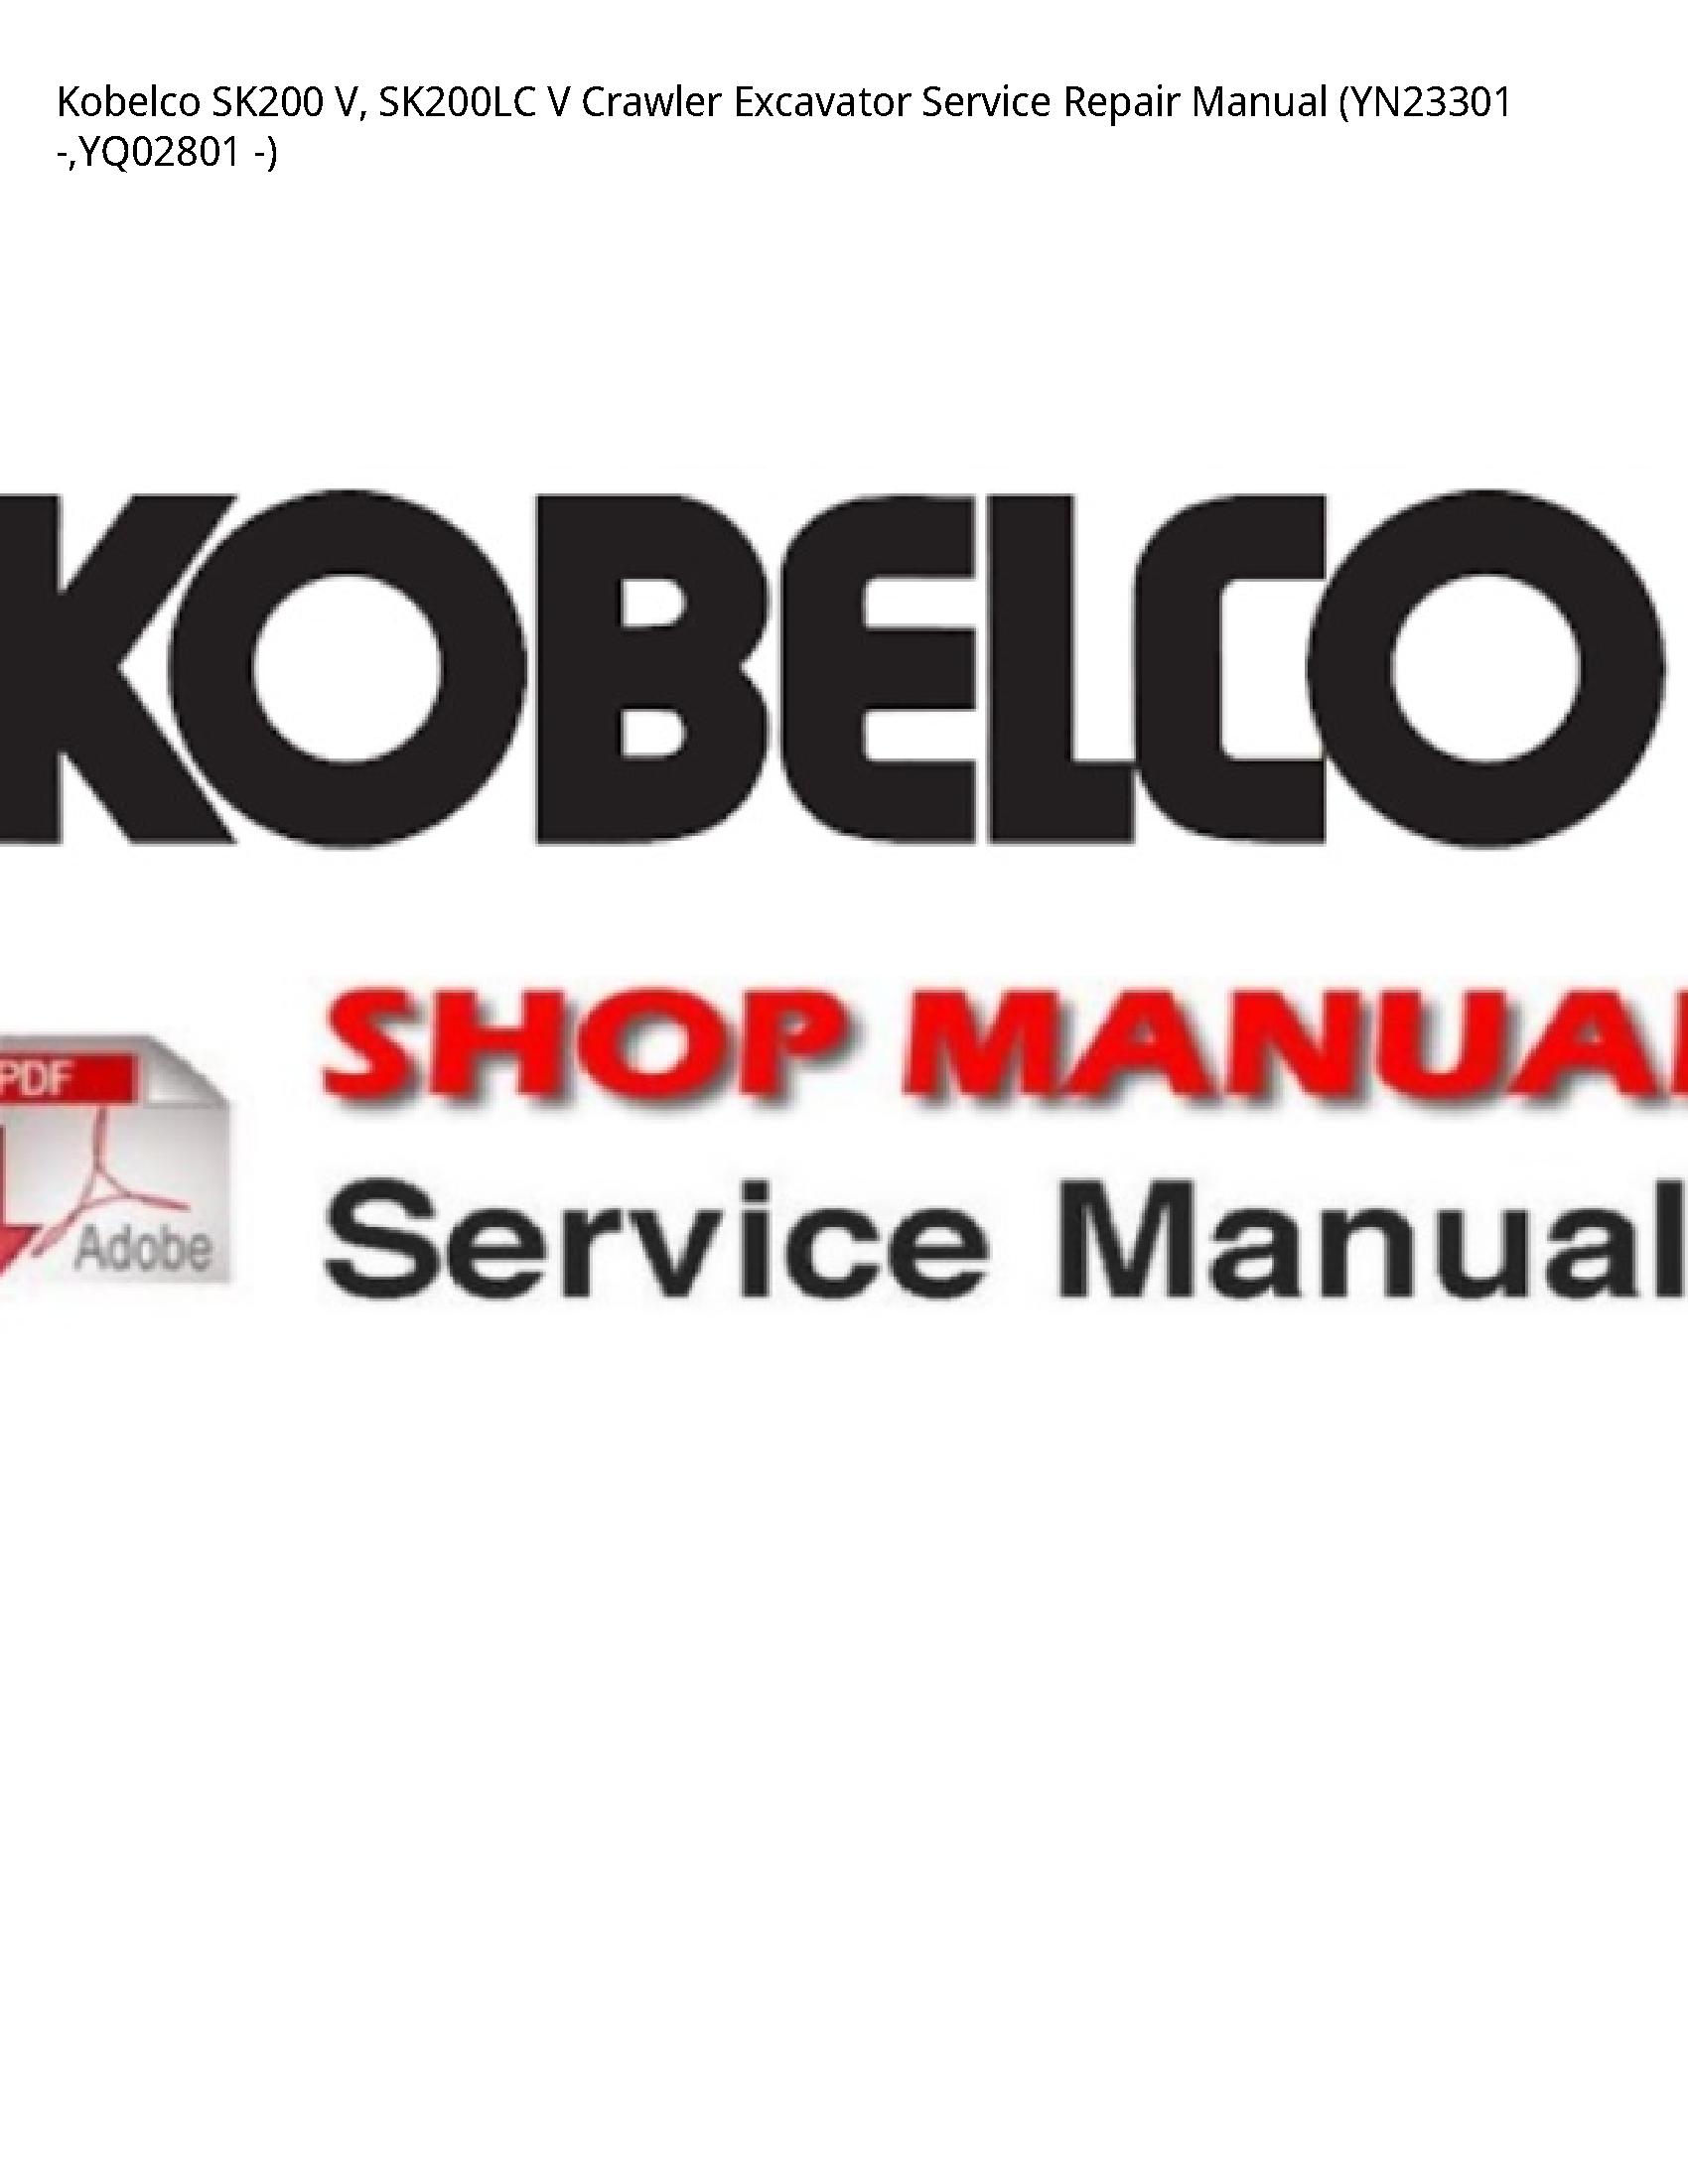 Kobelco SK200 V manual